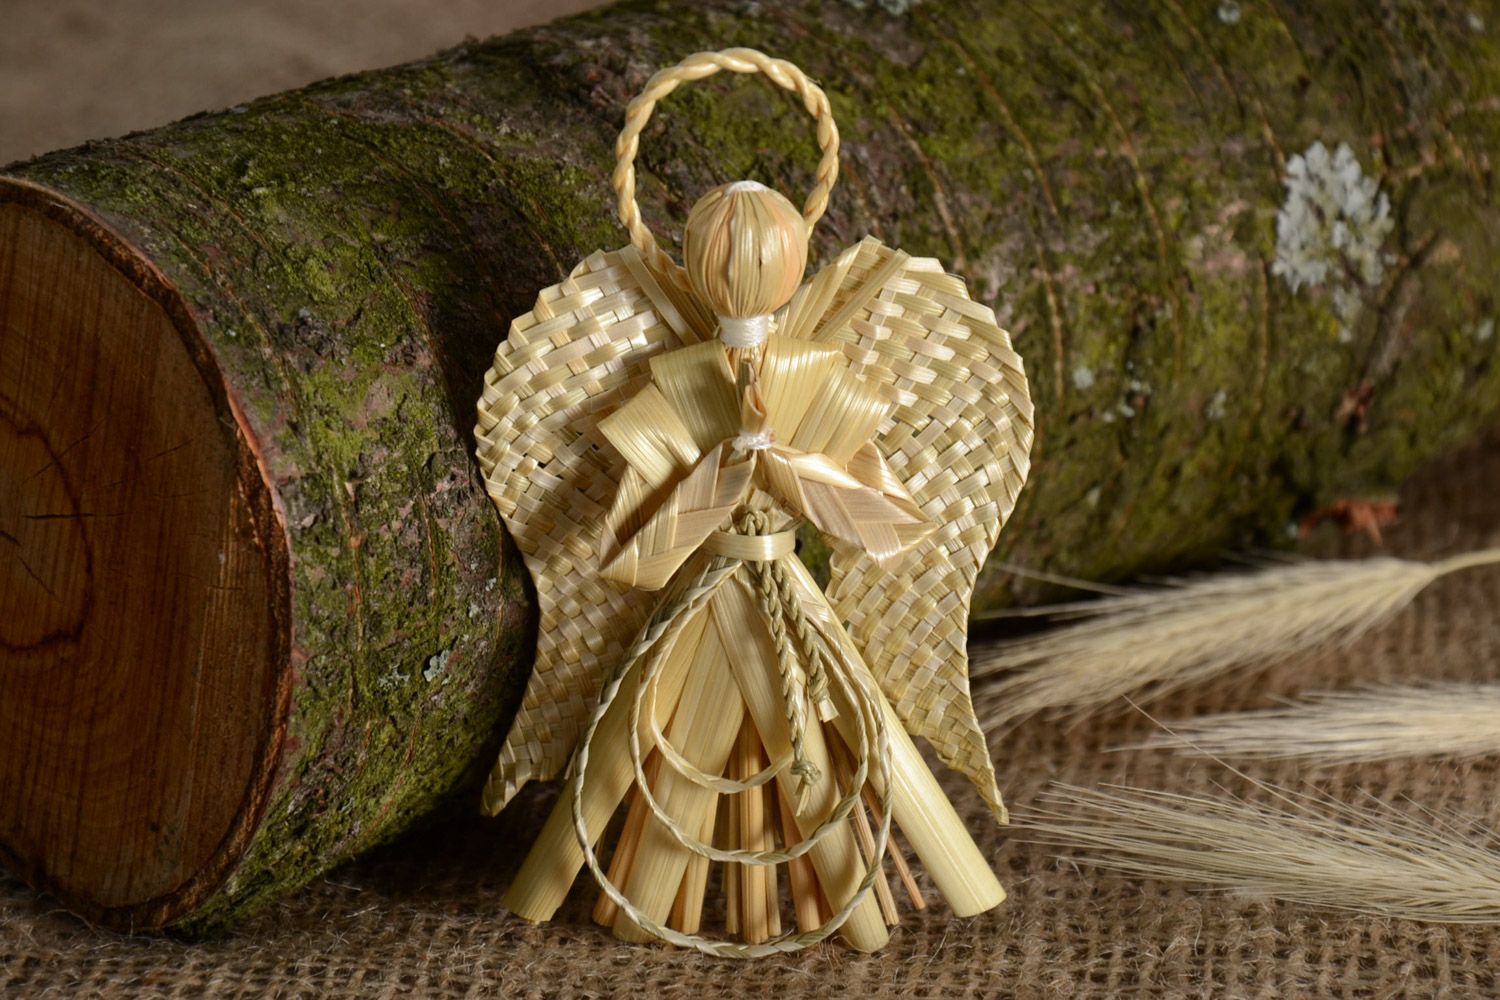 Ангел хранитель фигурка плетеная из соломы небольшого размера ручная работа фото 1